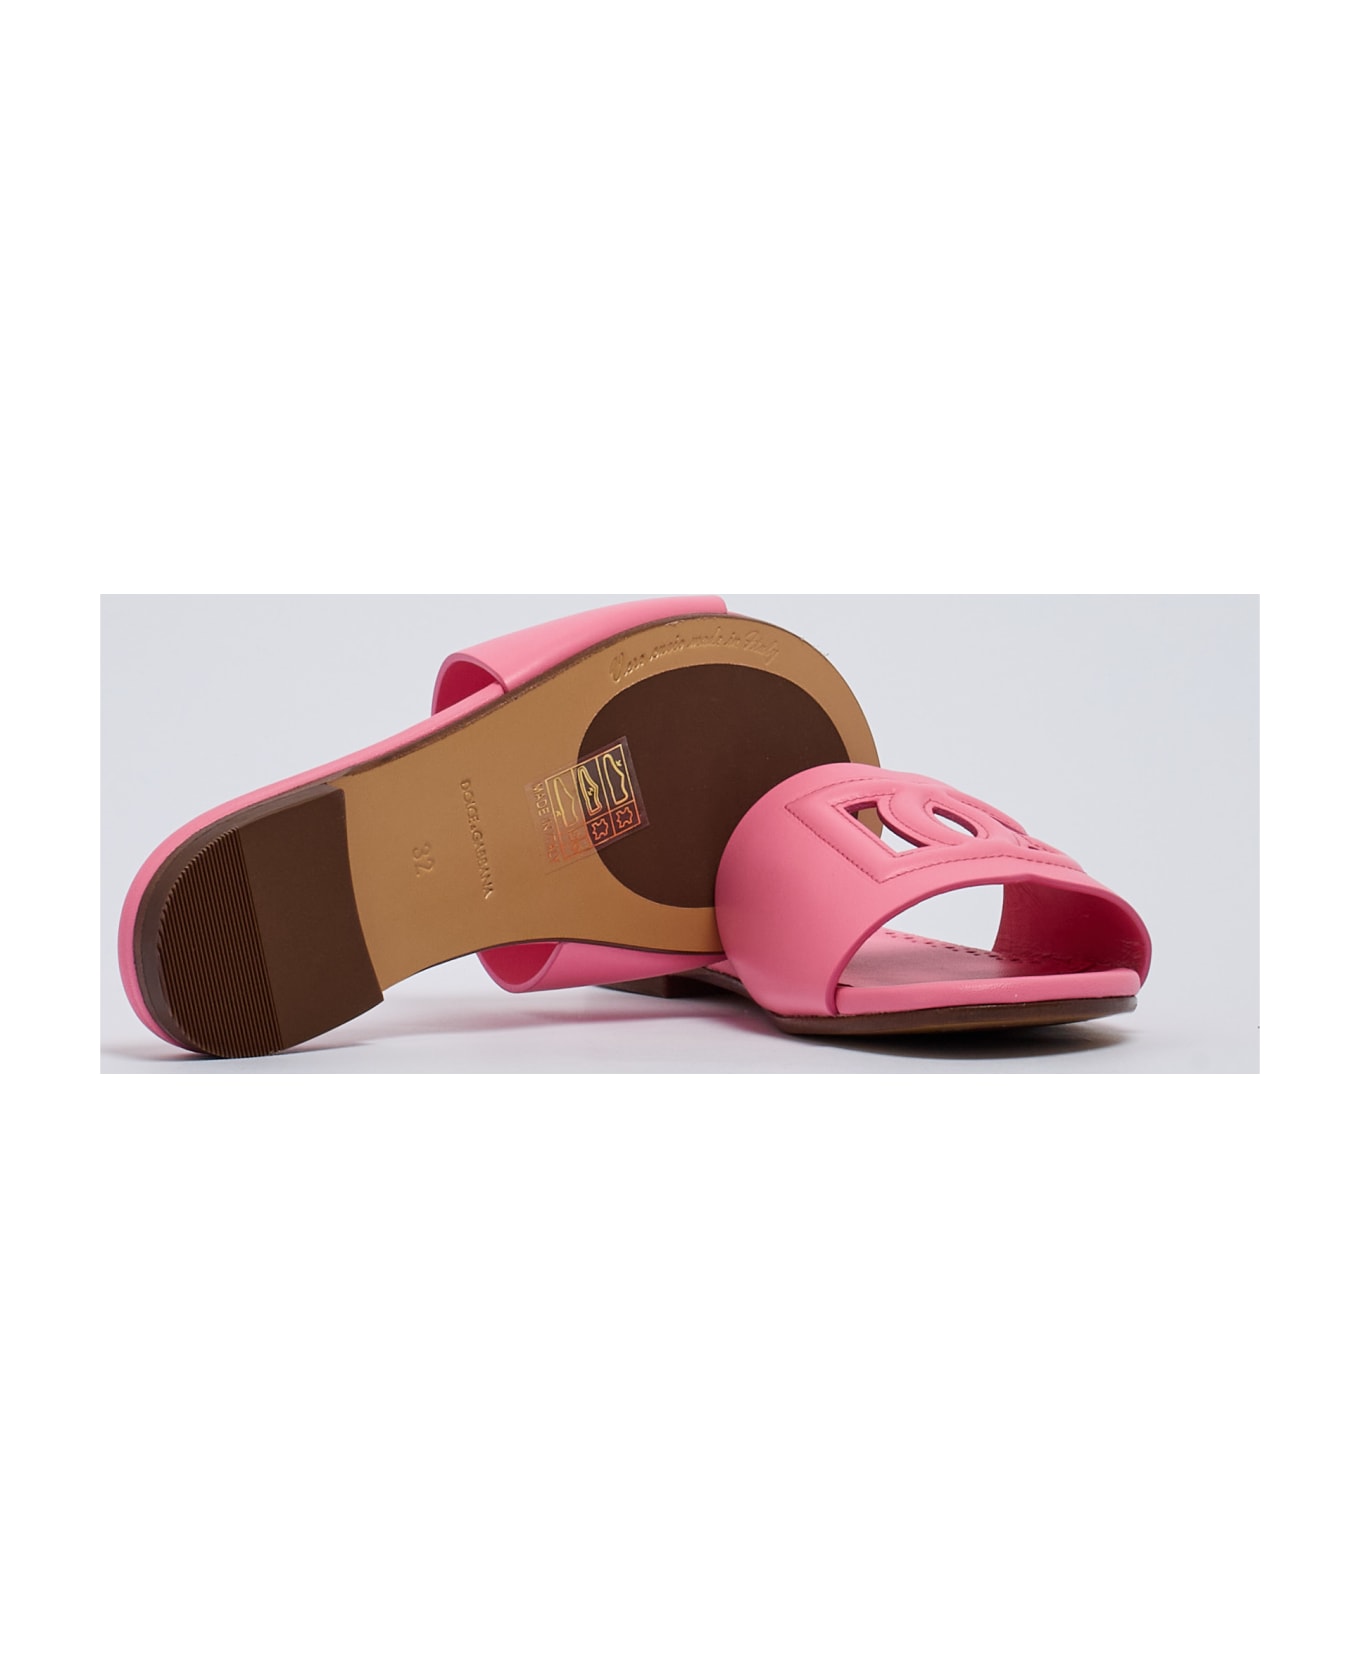 Dolce & Gabbana Slides Sandal - ROSA シューズ